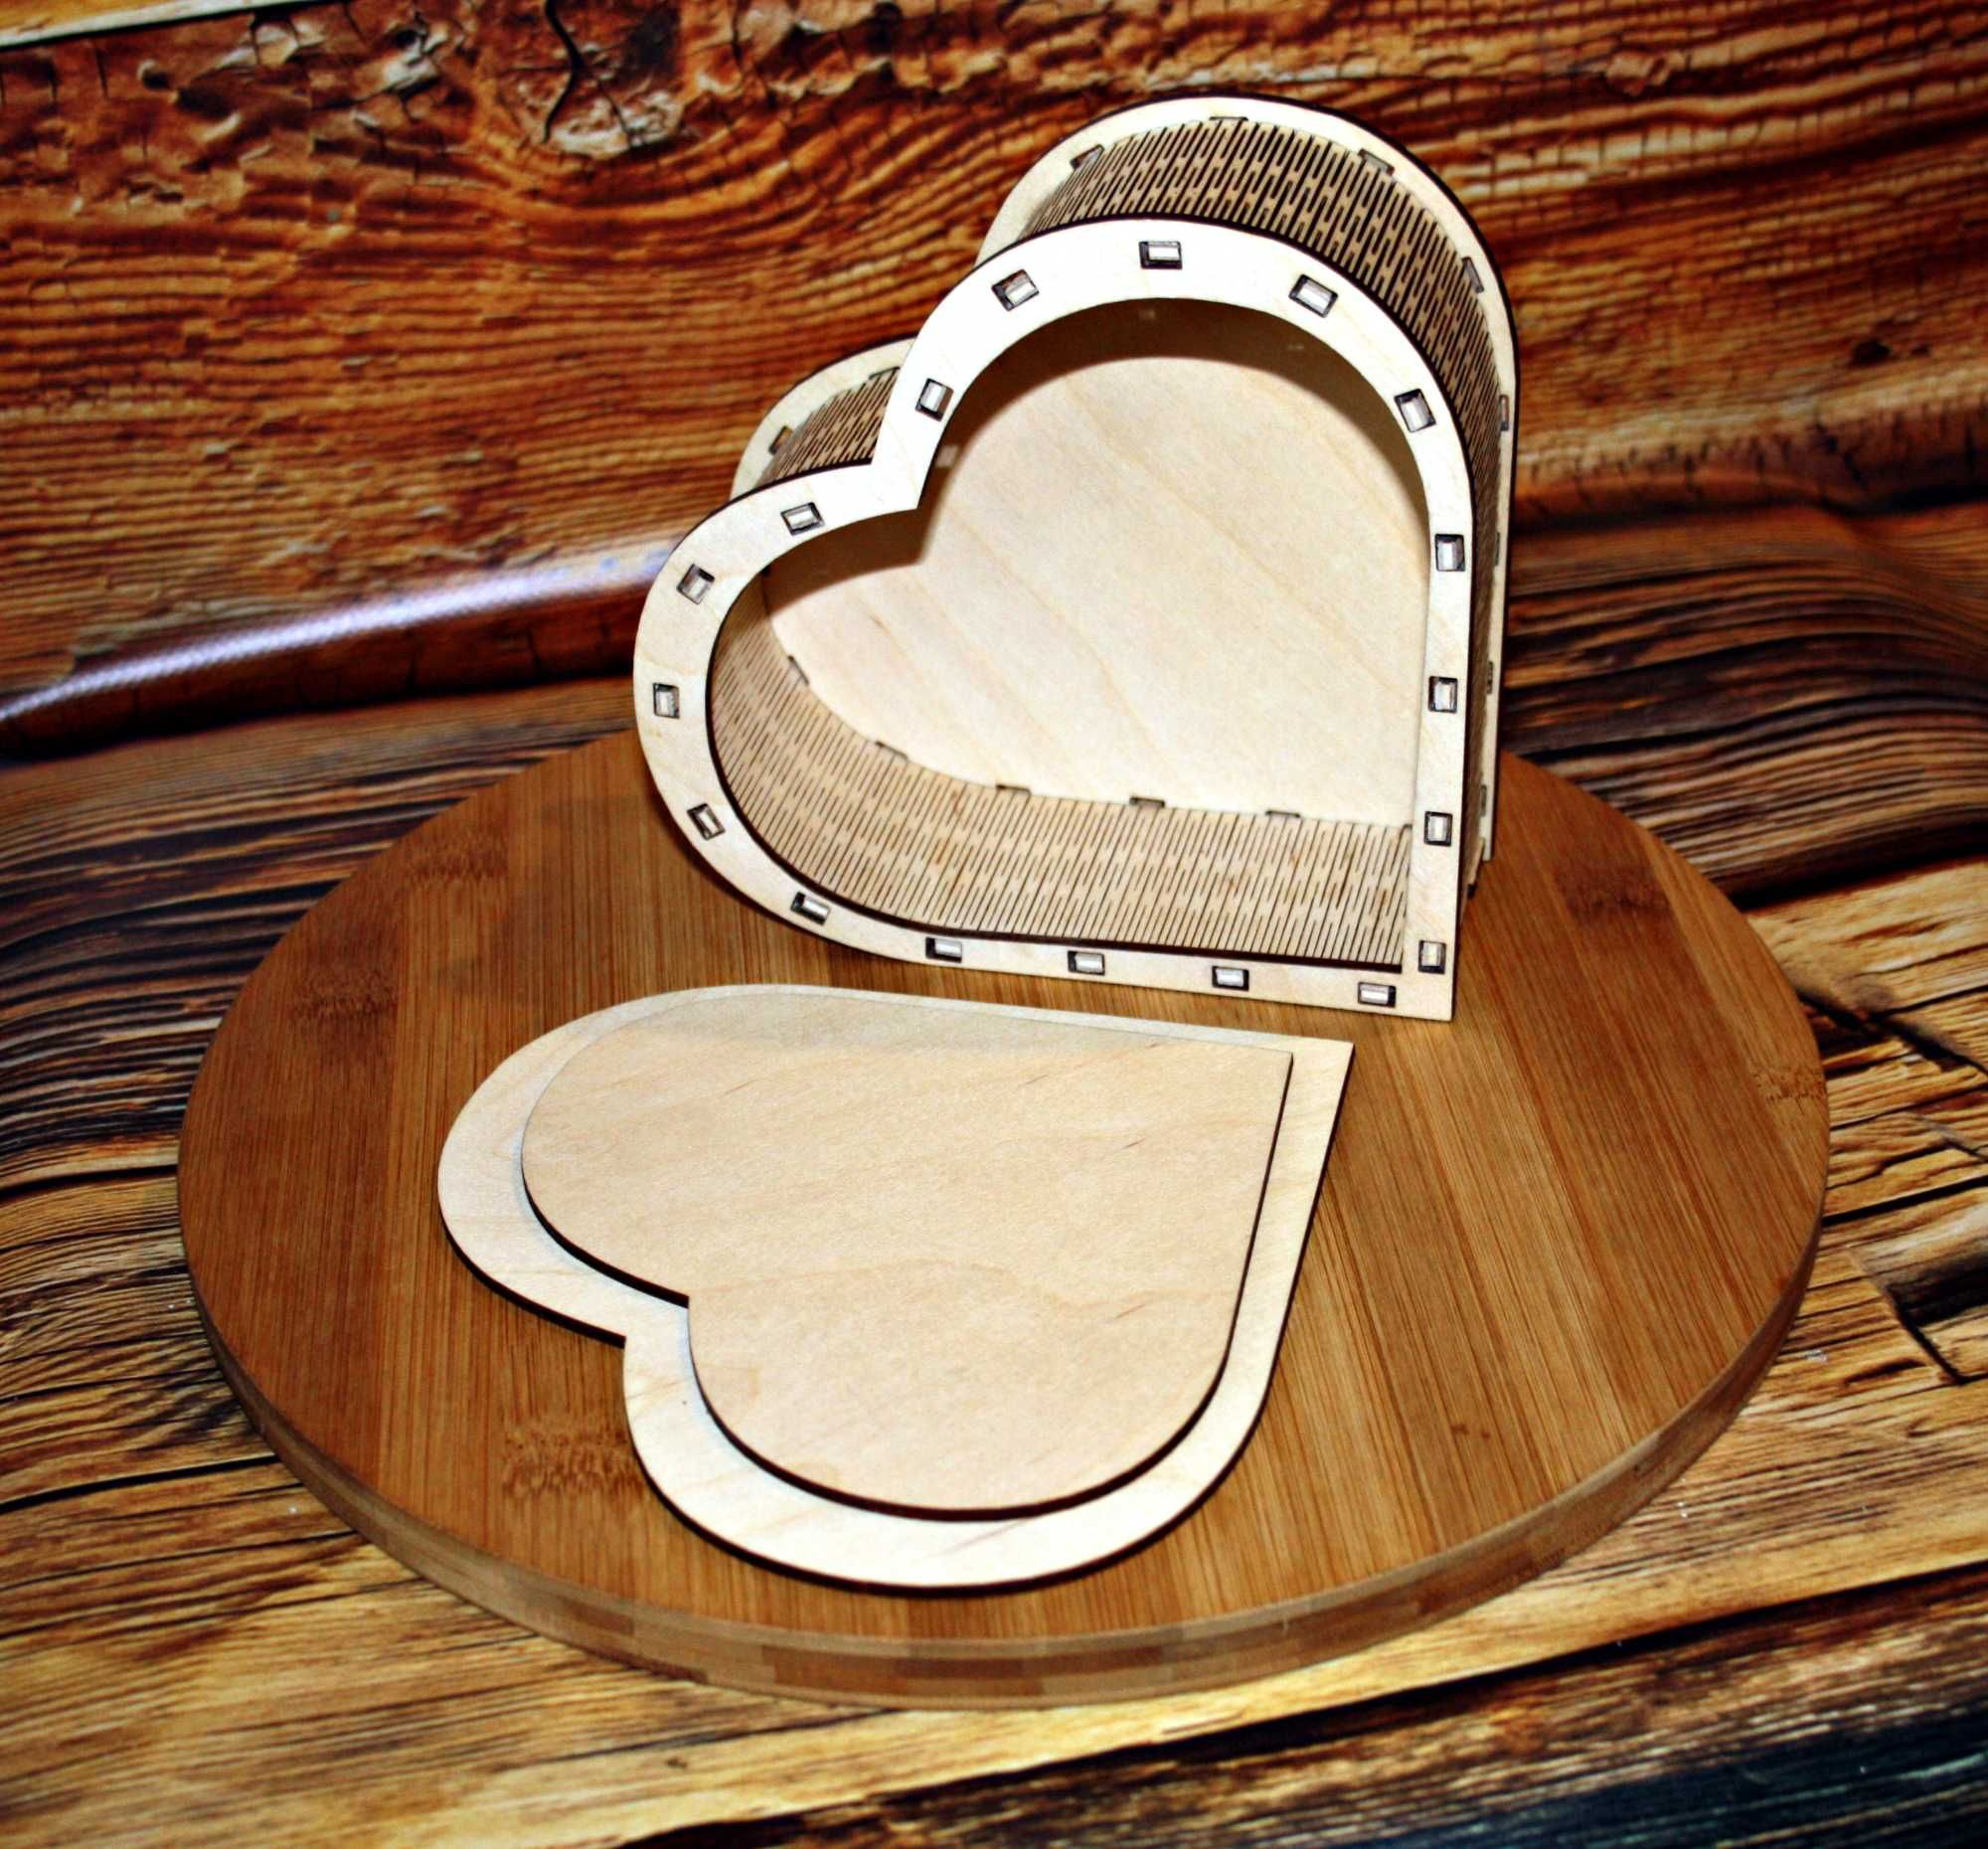 Drewniane pudełko prezentowe w kształcie serca